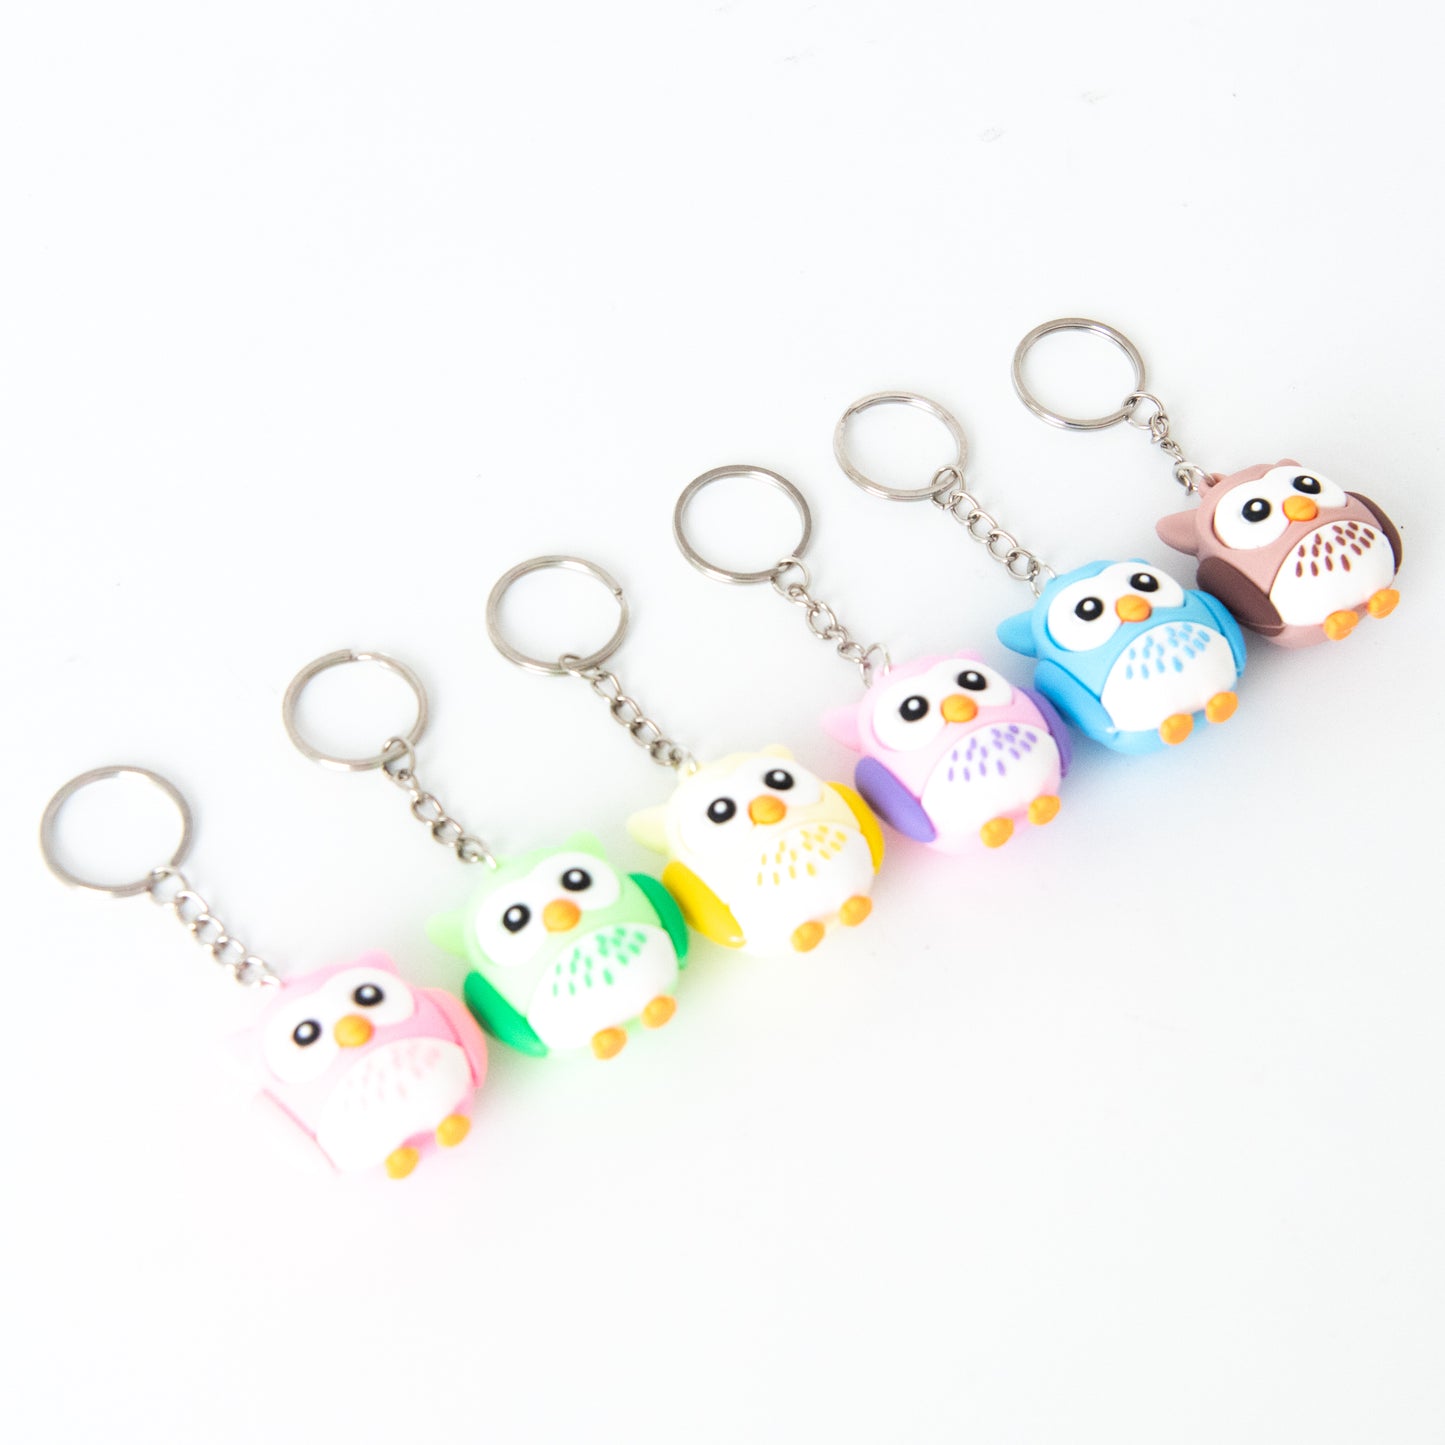 Teacher's Day Owl Key Chain - Random Color S$2.00 (u.p S$5.00)